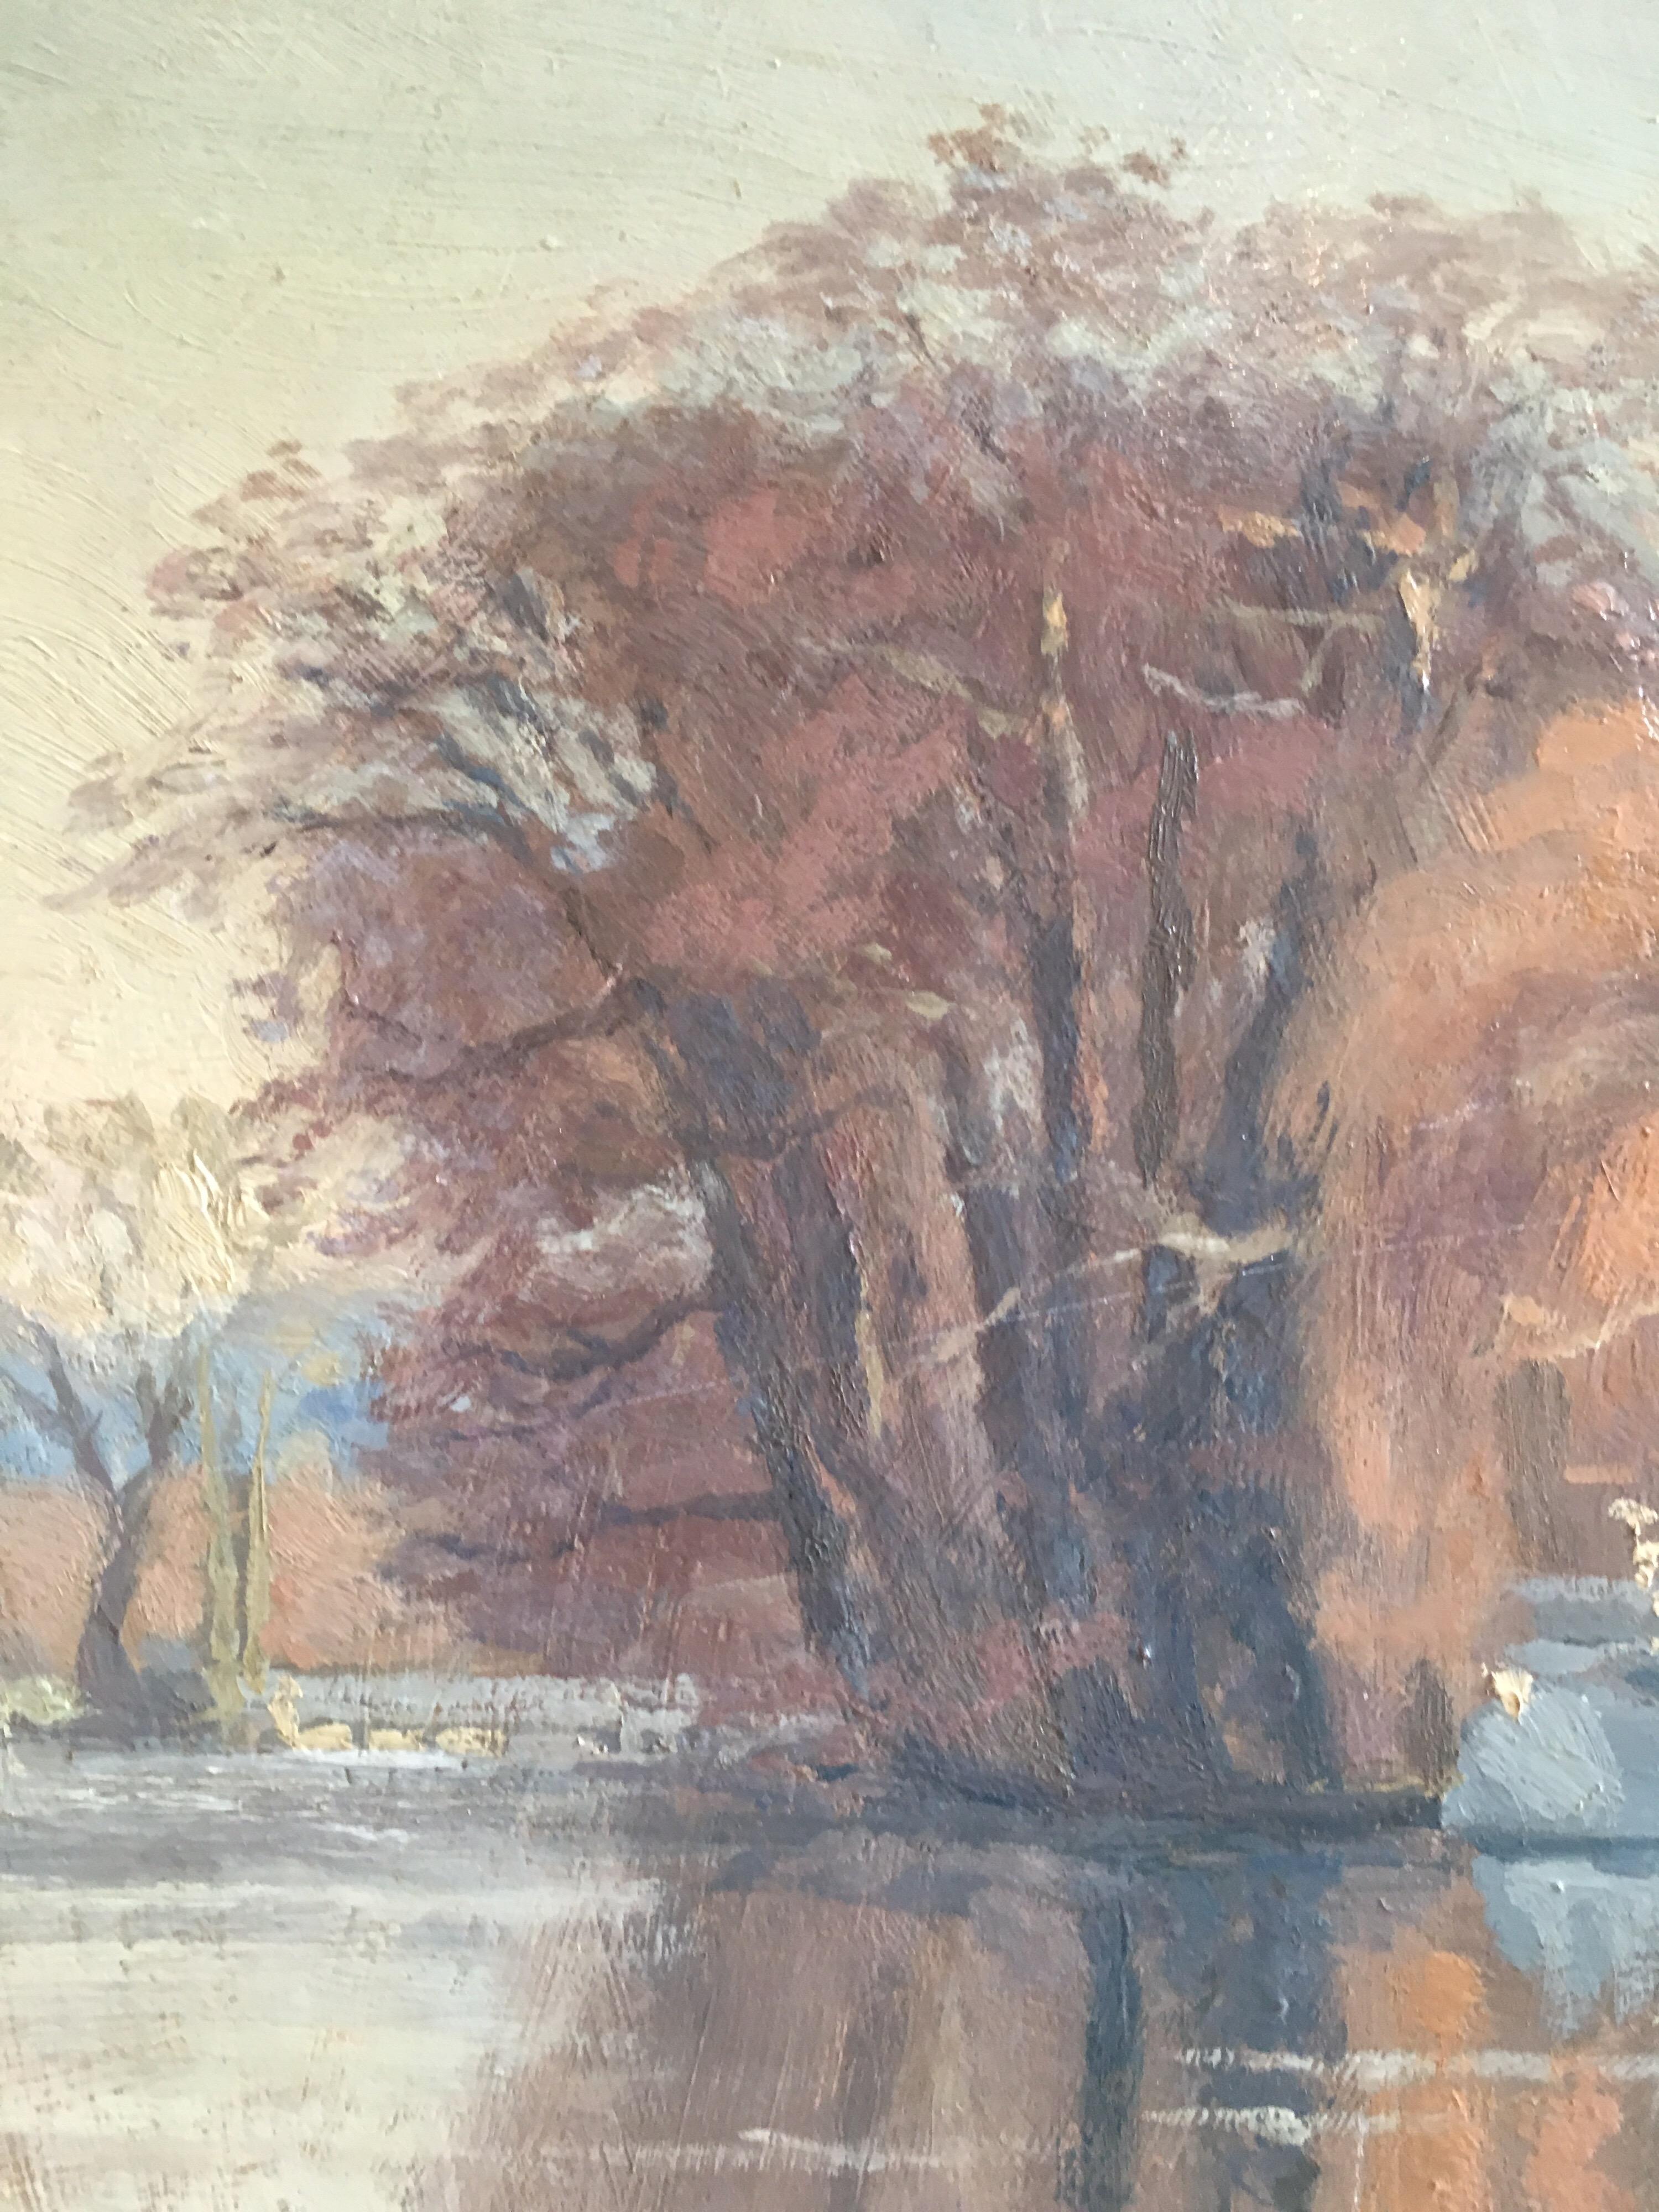 The River at Shiplake, England, Signed Original Impressionist oil
Par l'artiste britannique Harold George, 20e siècle
Signé par l'artiste dans le coin inférieur gauche et daté '71' & verso
Peinture à l'huile sur carton, non encadrée
Taille du